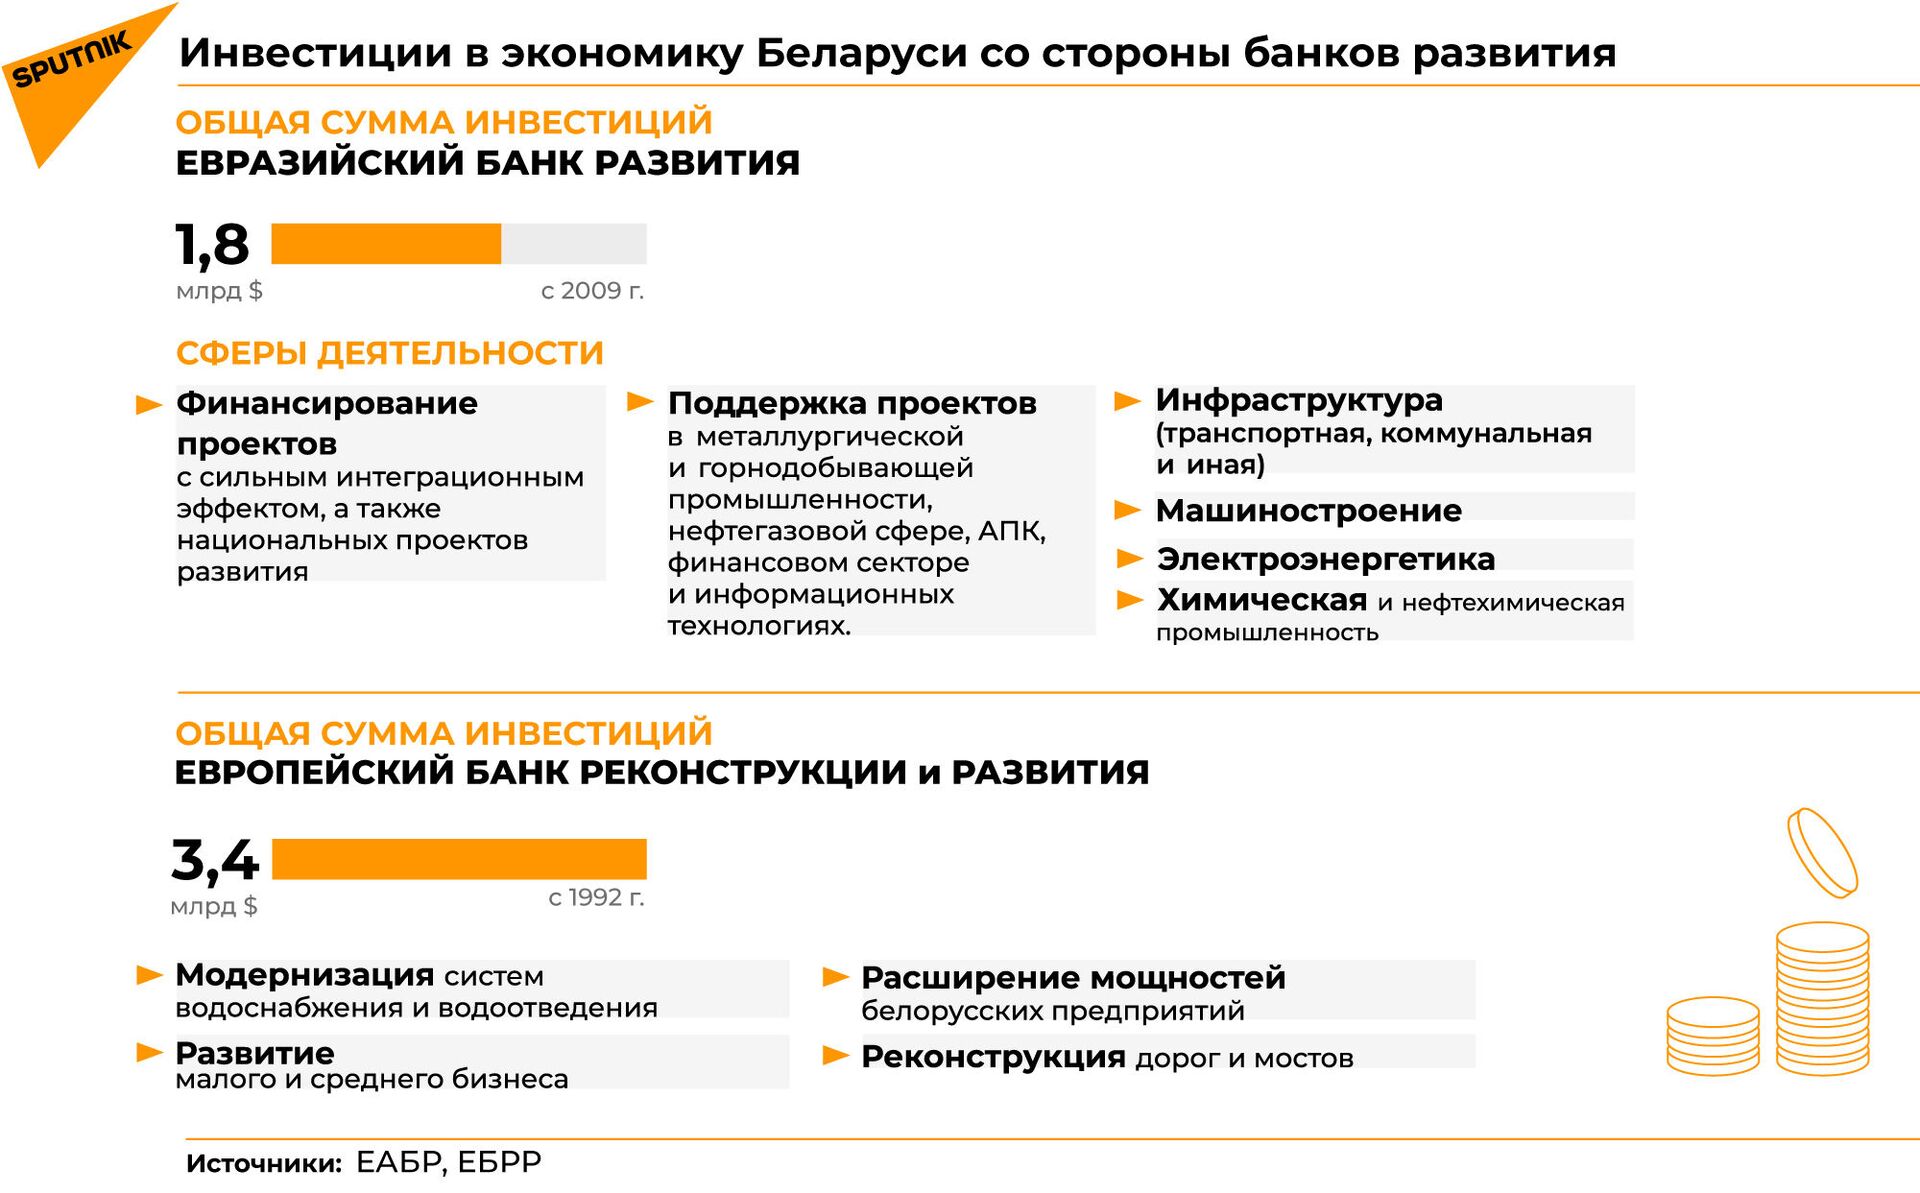 Сайты отзывов беларуси. Банк развития Беларусь.